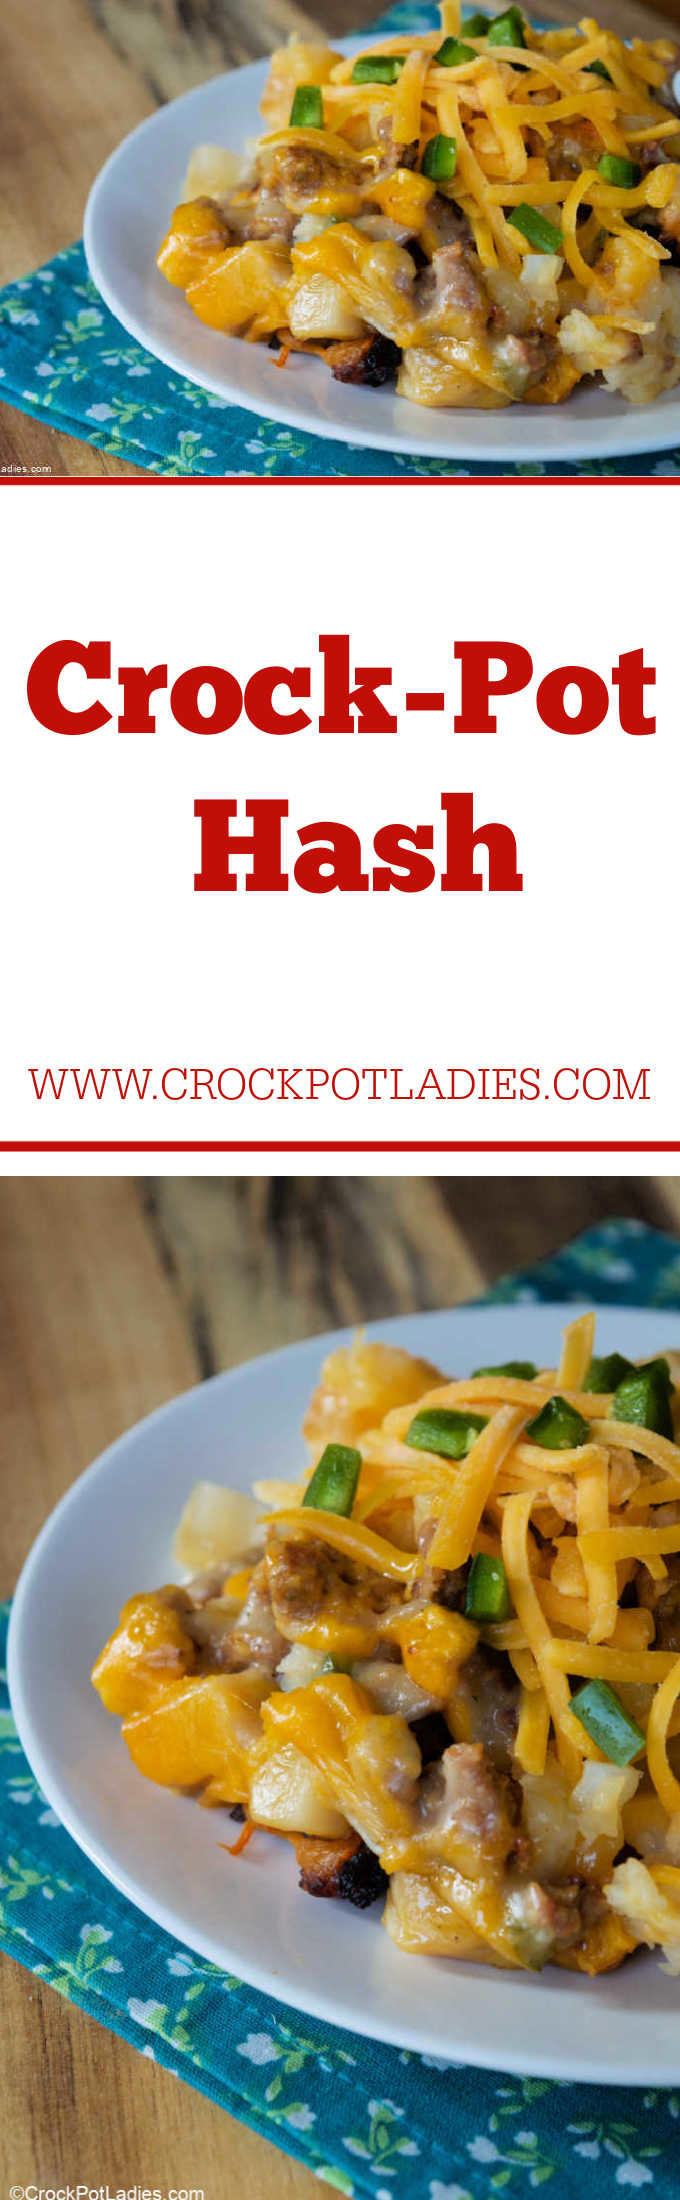 Crock-Pot Hash